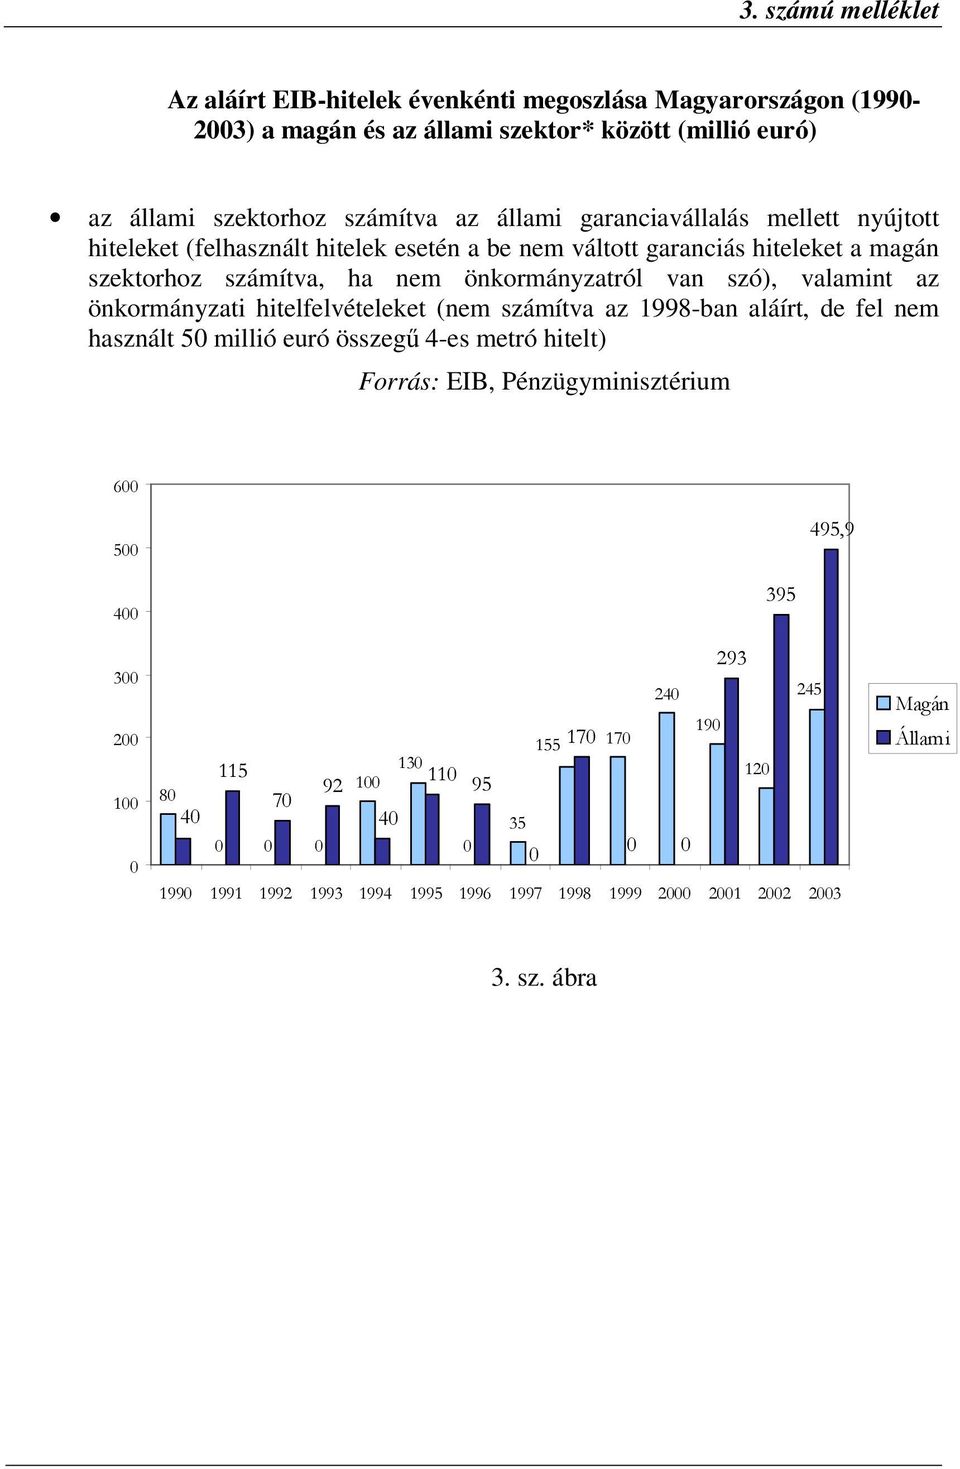 önkormányzati hitelfelvételeket (nem számítva az 1998-ban aláírt, de fel nem használt 50 millió euró összegű 4-es metró hitelt) Forrás: EIB, Pénzügyminisztérium 600 500 495,9 400 300